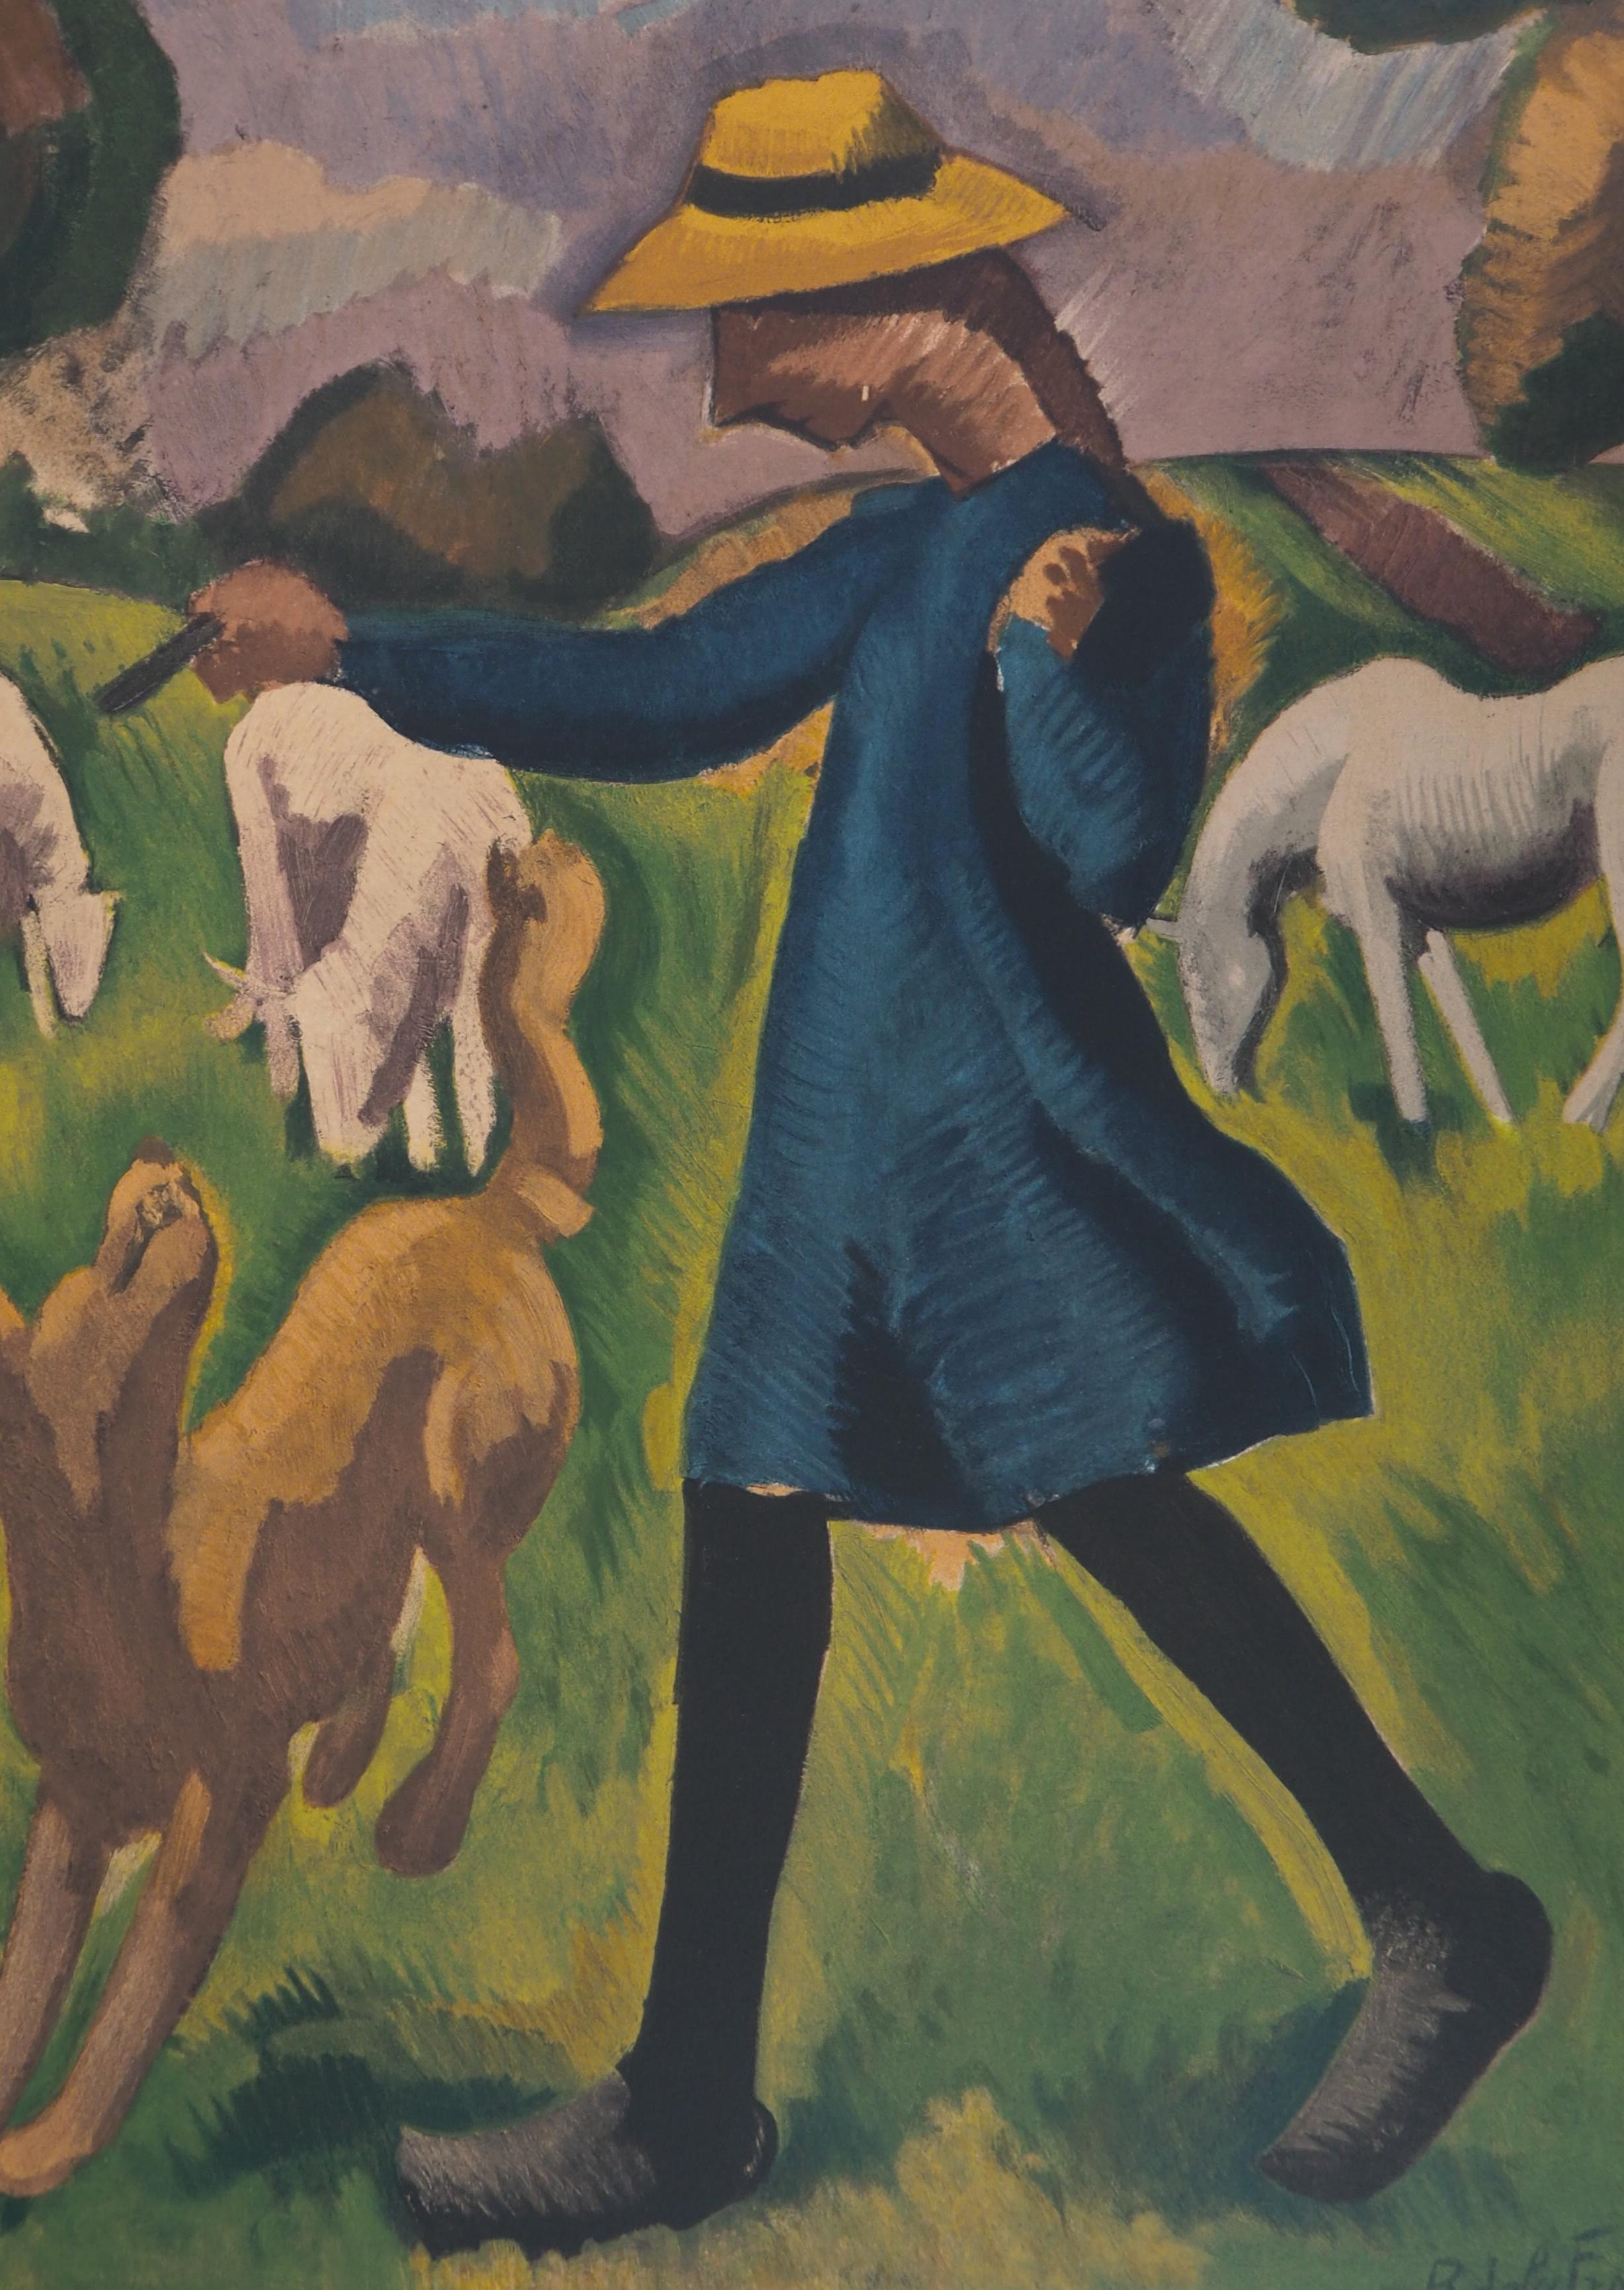 Roger de la Fresnaye (après)
Campagne : Fille jouant avec un chien 

Lithographie sur pierre d'après une peinture
Imprimé dans l'atelier de Mourlot
Signature imprimée dans la plaque
Sur vélin d'Arches 65 x 50 cm (c. 26 x 20 inch)

Excellent état